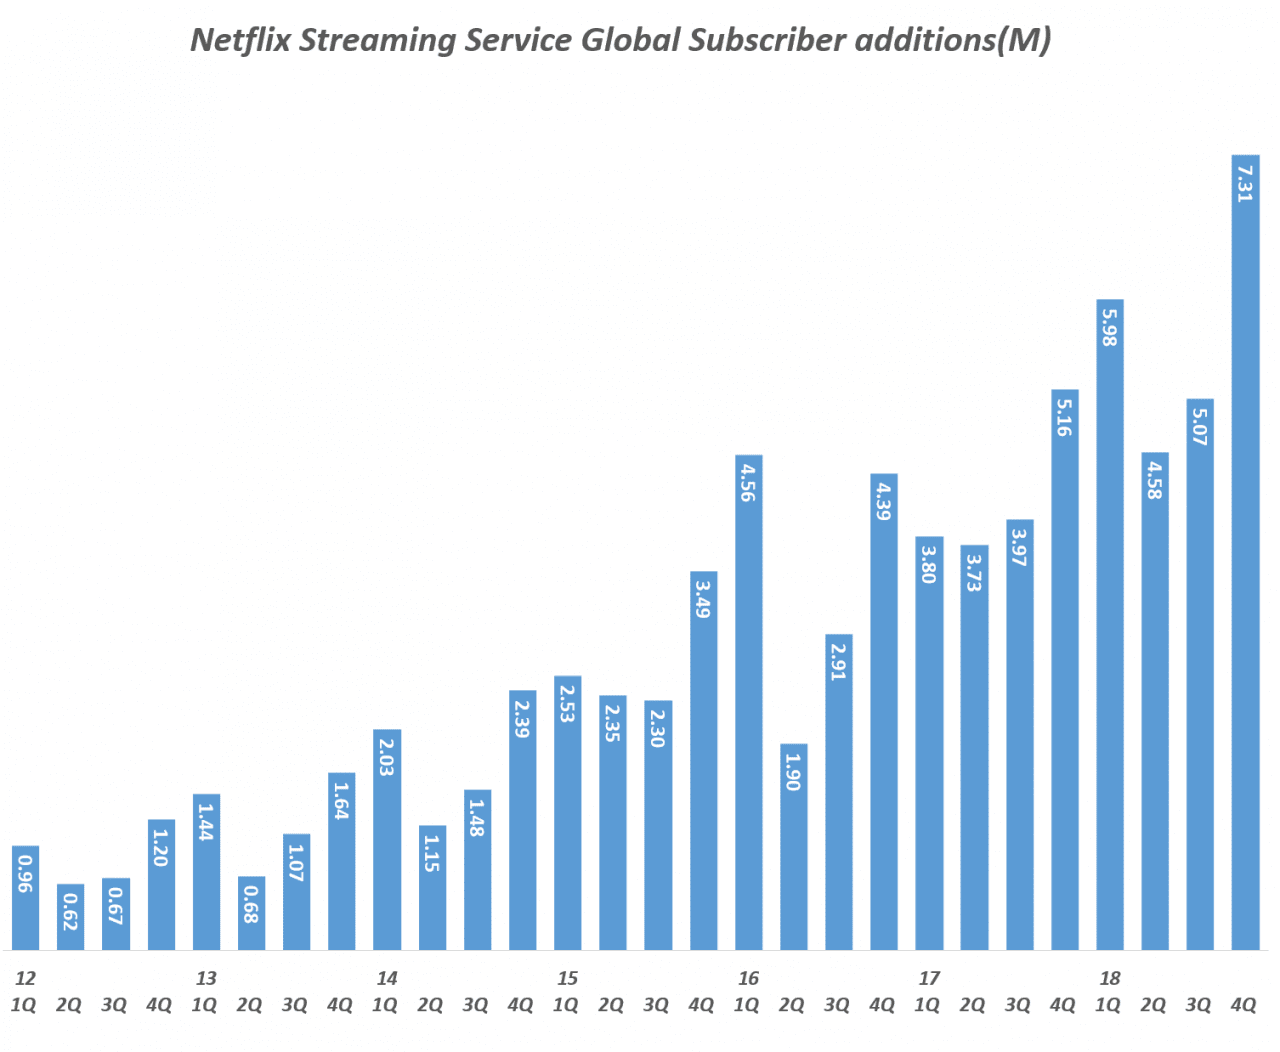 넷플릭스 분기별 스트리밍 서비스 글로벌 유료 구독자 증가 추이(2012년 1분기 ~ 2018년 4분기), Quarterly Netflix Streaming Service Global Subscriber additions(M), Graph by Happist